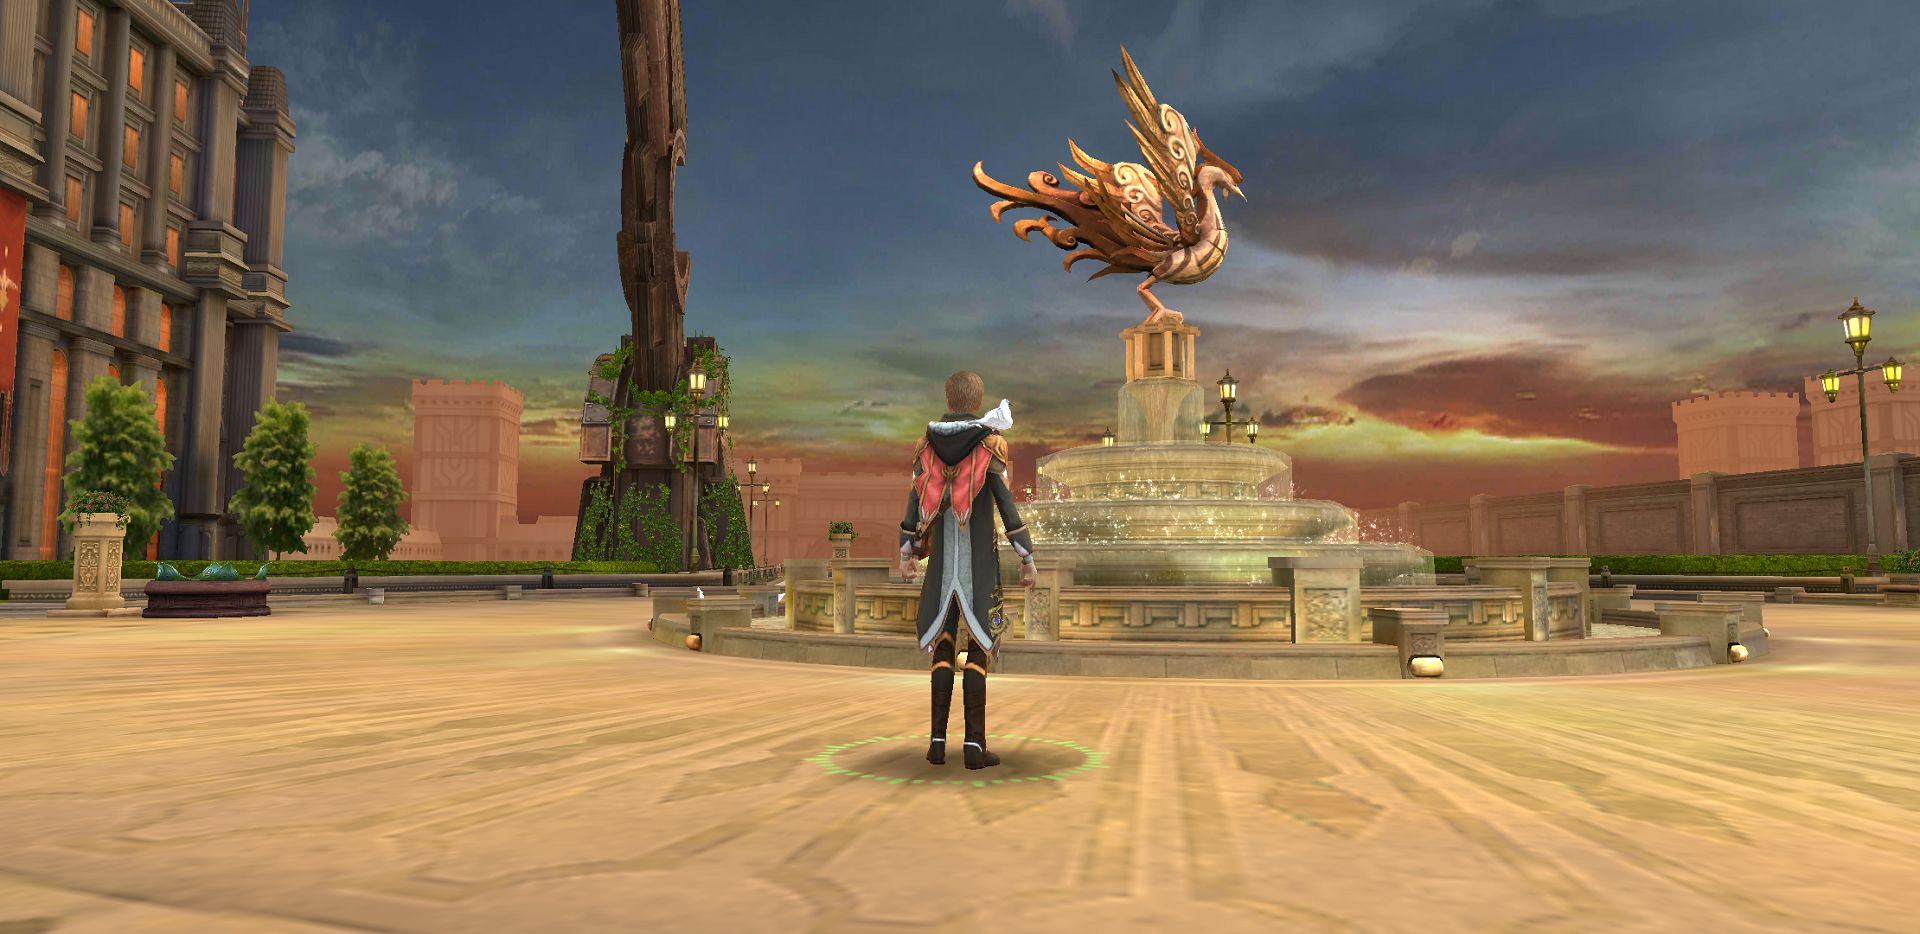 Final Fantasy: Uyanış, mobil platformlar için çıktı